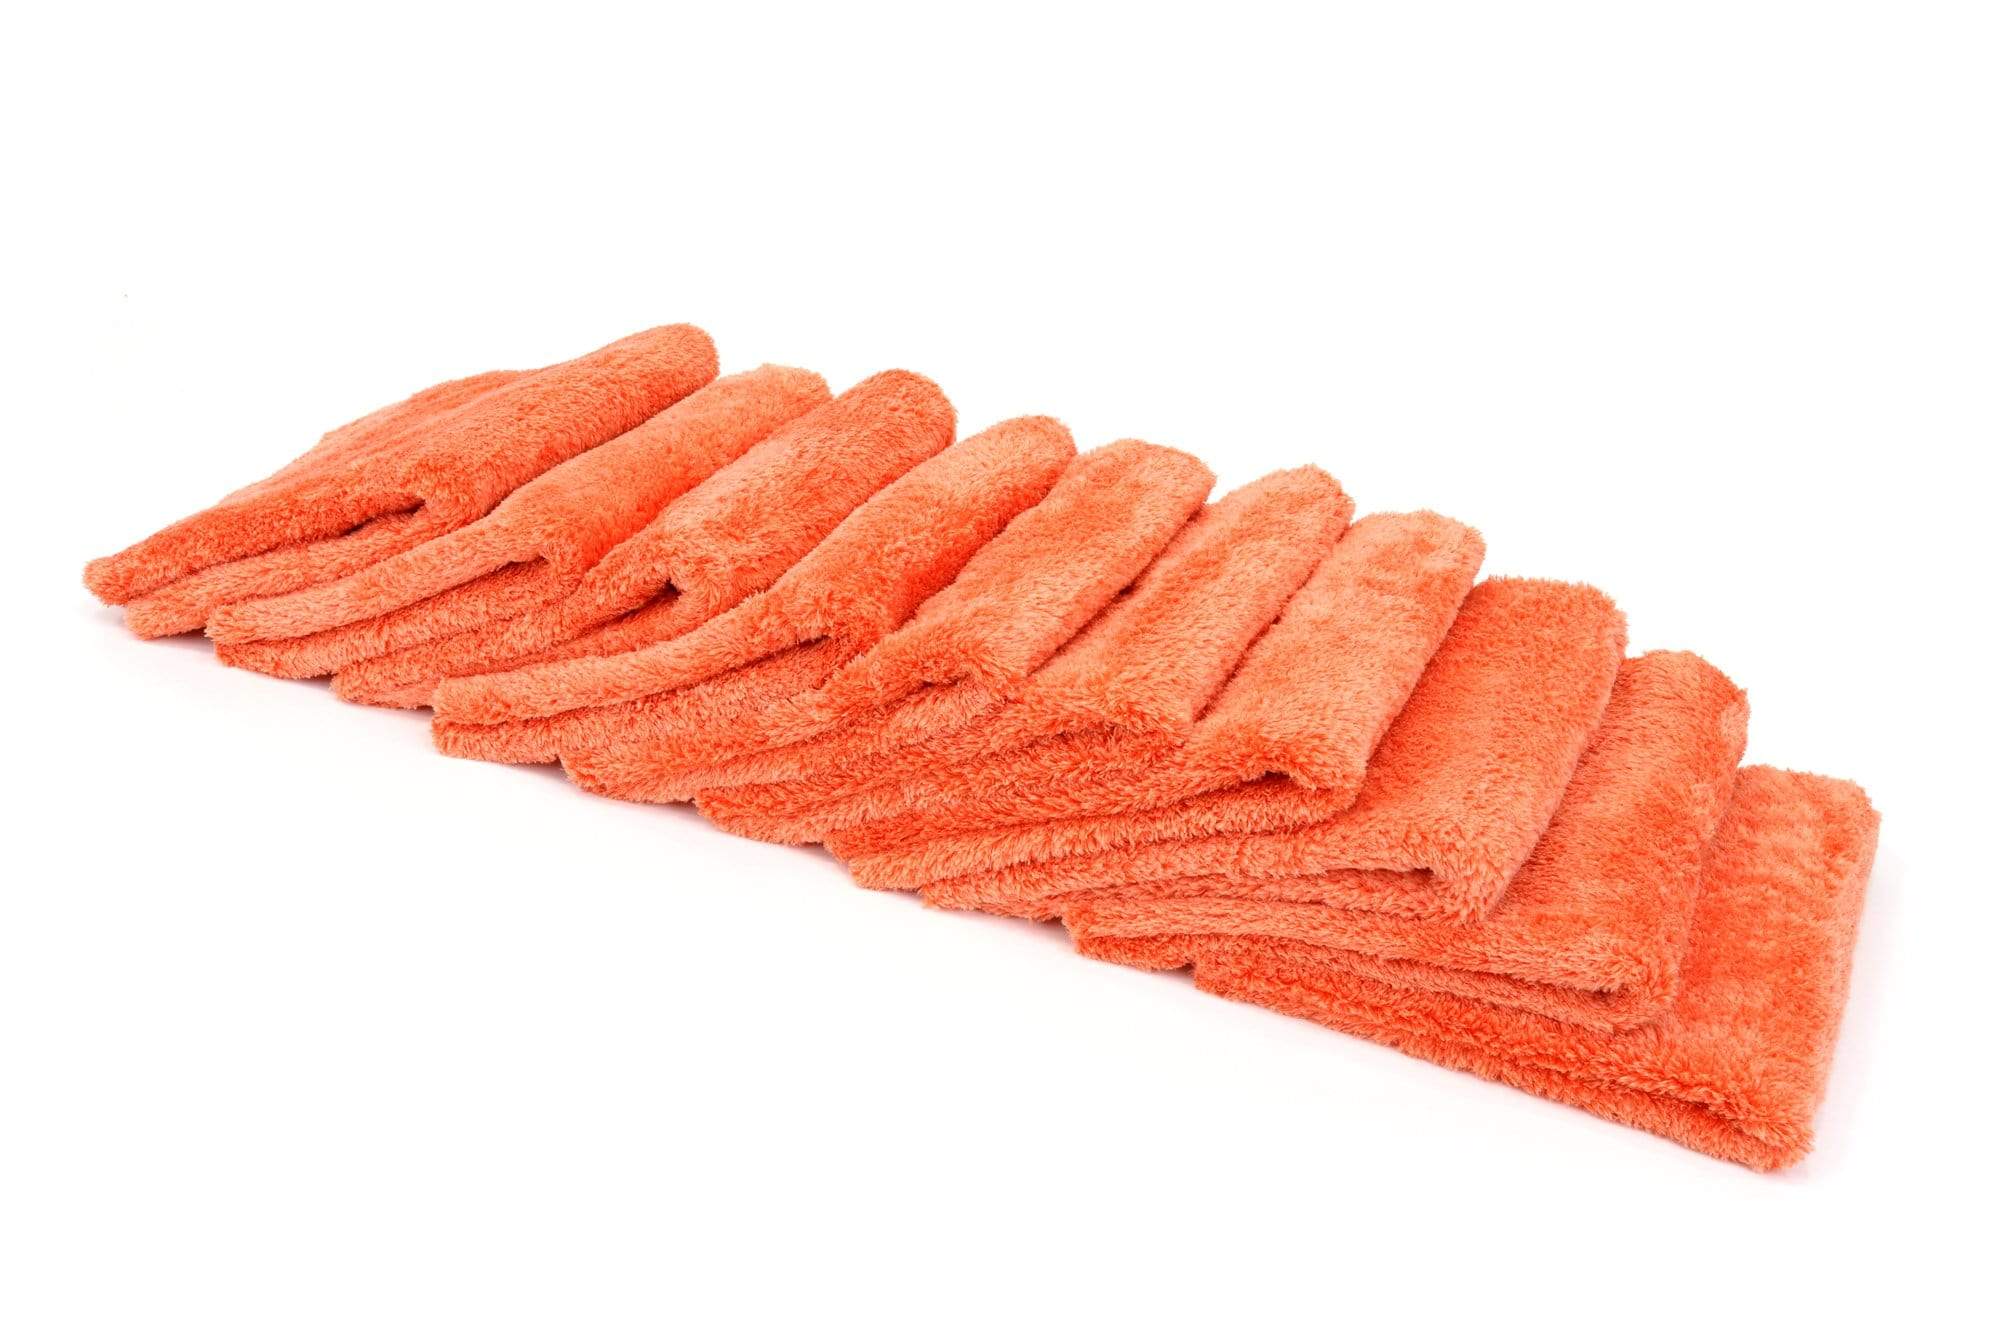 Autofiber Towel Orange [Korean Plush 470] Microfiber Detailing Towel (16 in. x 16 in., 470 gsm) 10 pack BULK BUNDLE